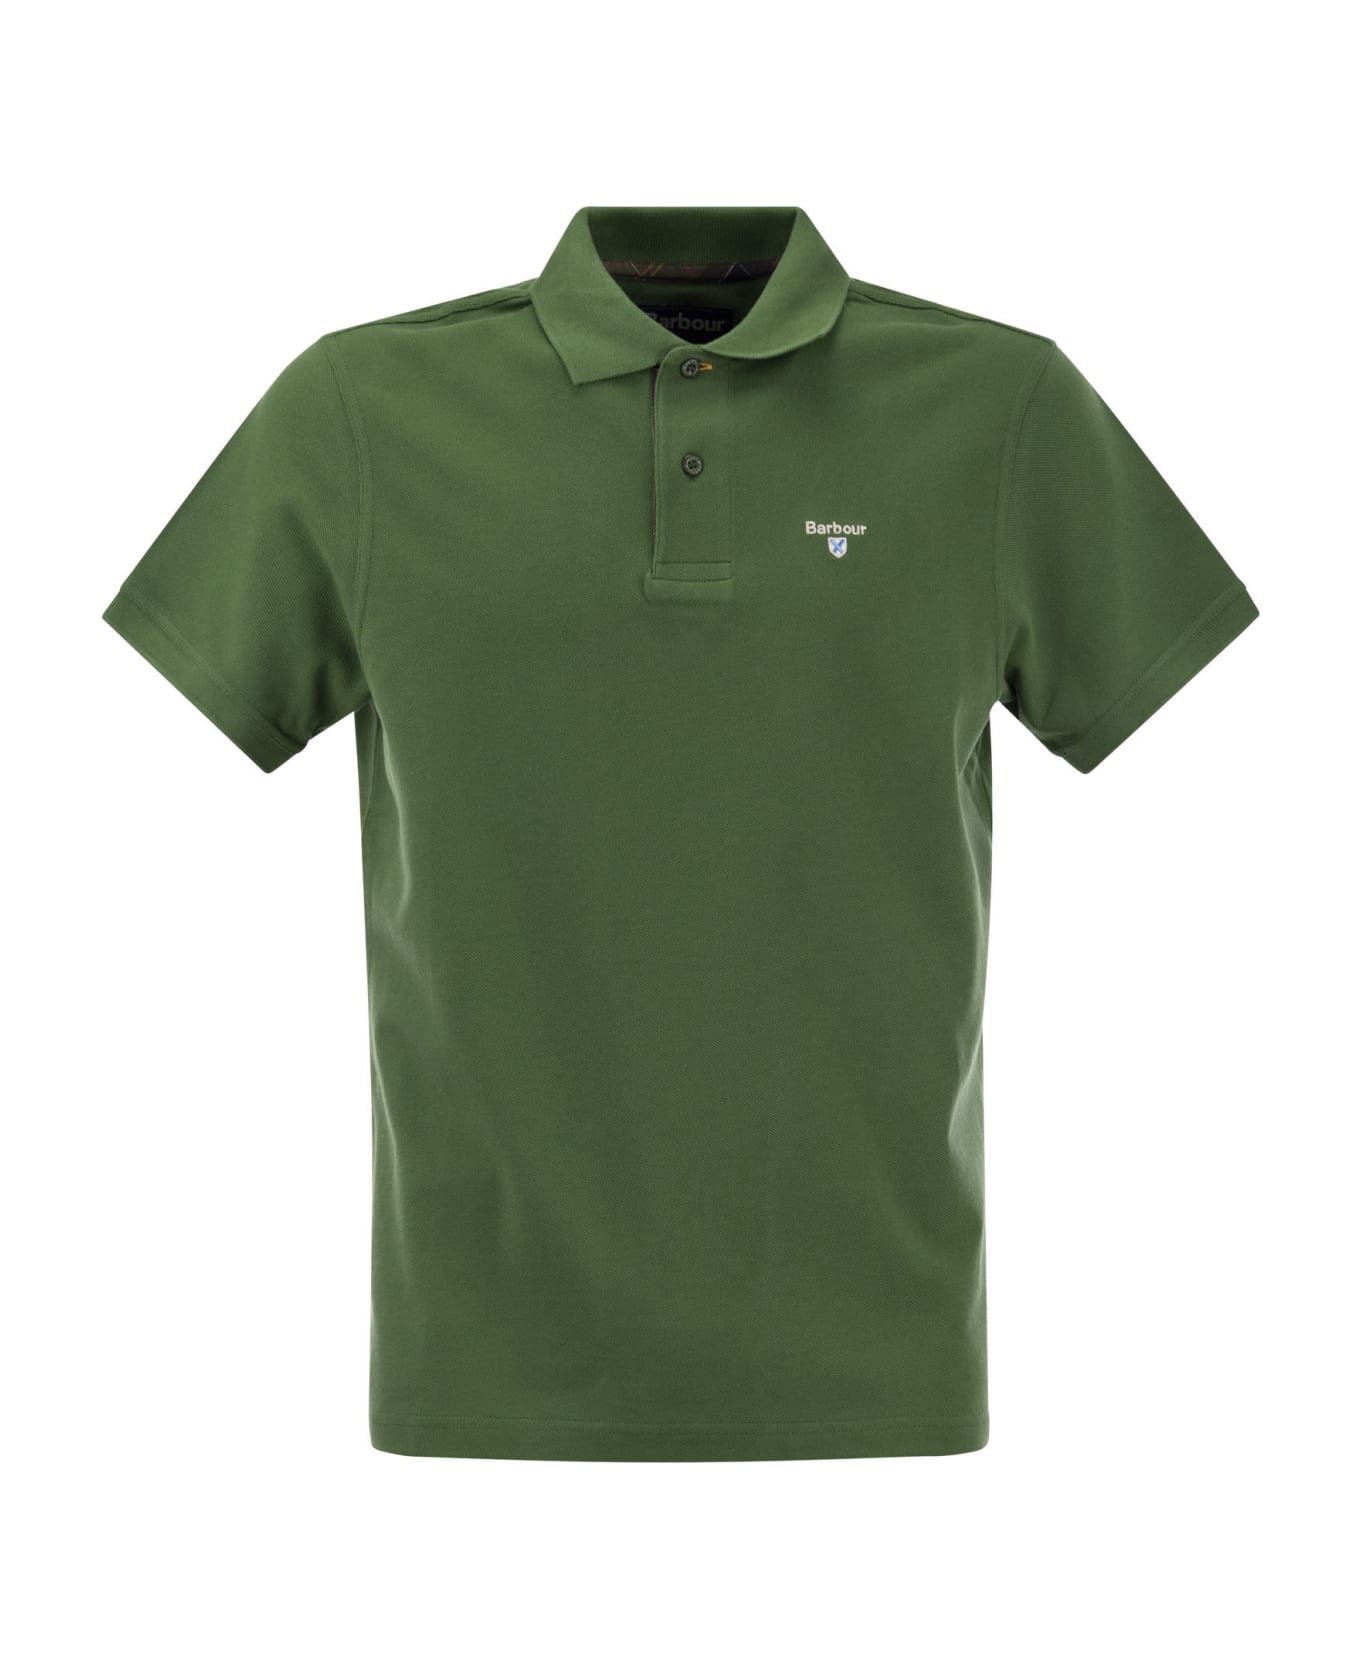 Barbour Tartan Pique Polo Shirt - Green